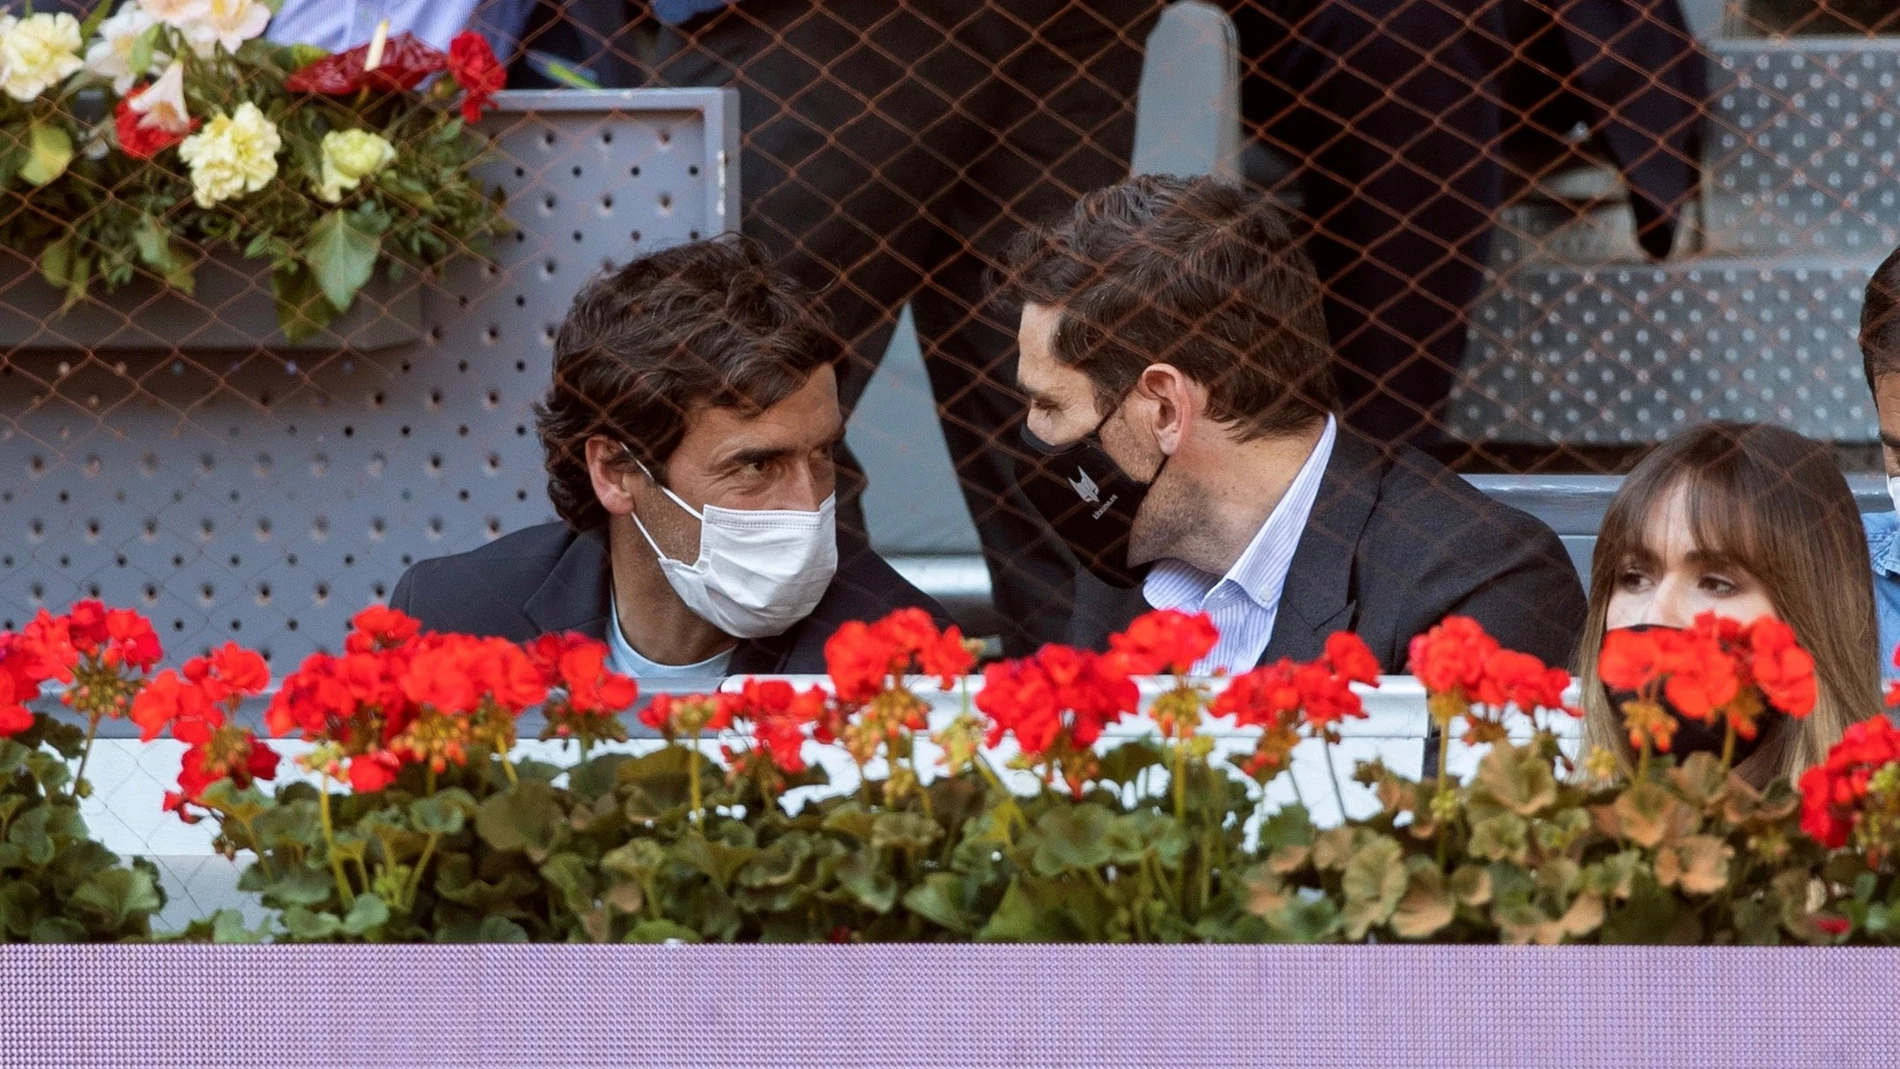 Raúl González Blanco e Iker Casillas vieron el partido de Rafa Nadal contra Alcaraz en la Caja Mágica.